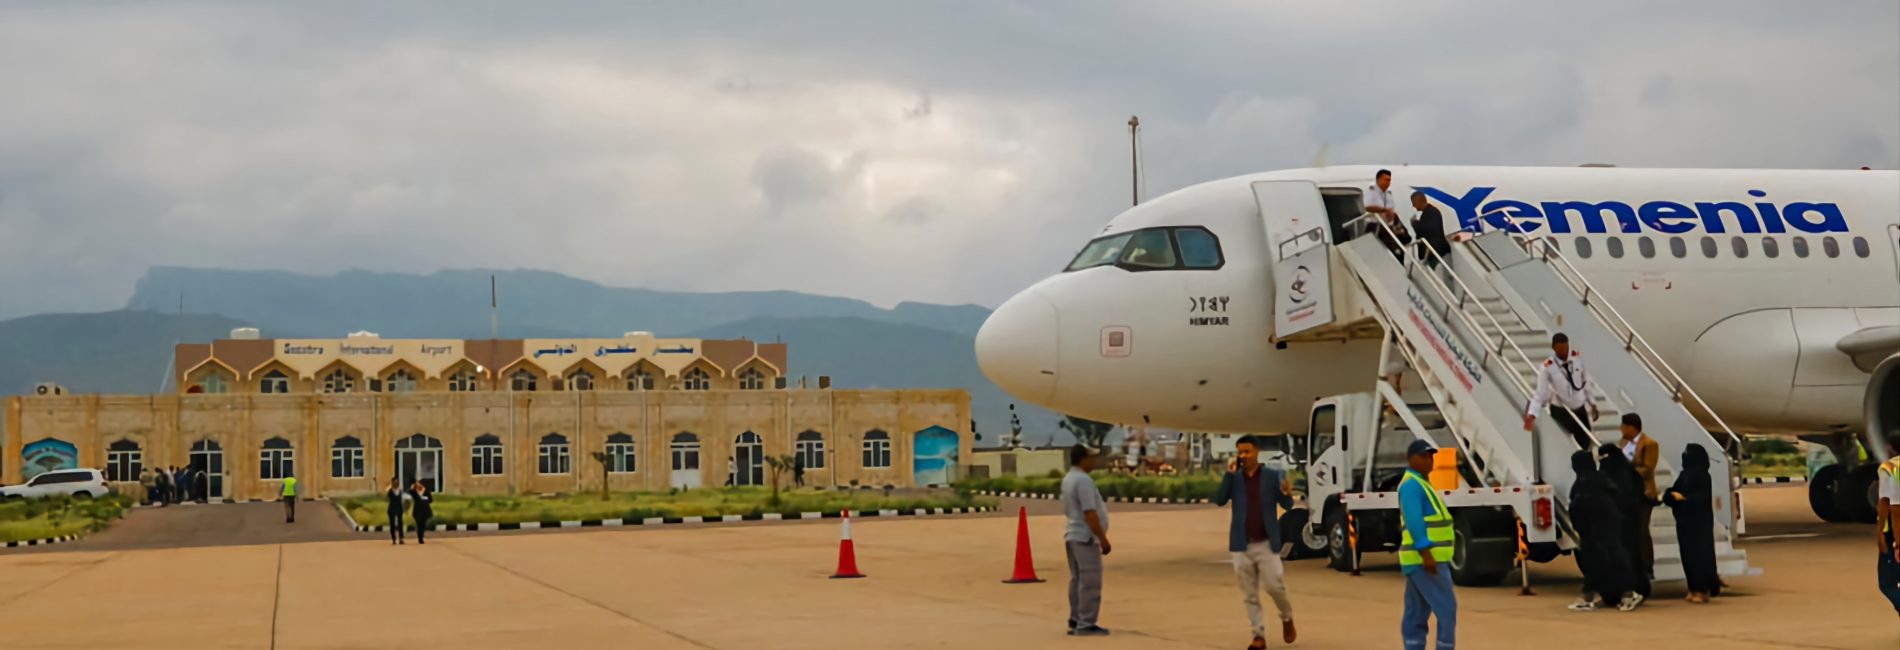 اليمنية تدشن أولى رحلاتها (عدن - سقطرى - الغيضة)